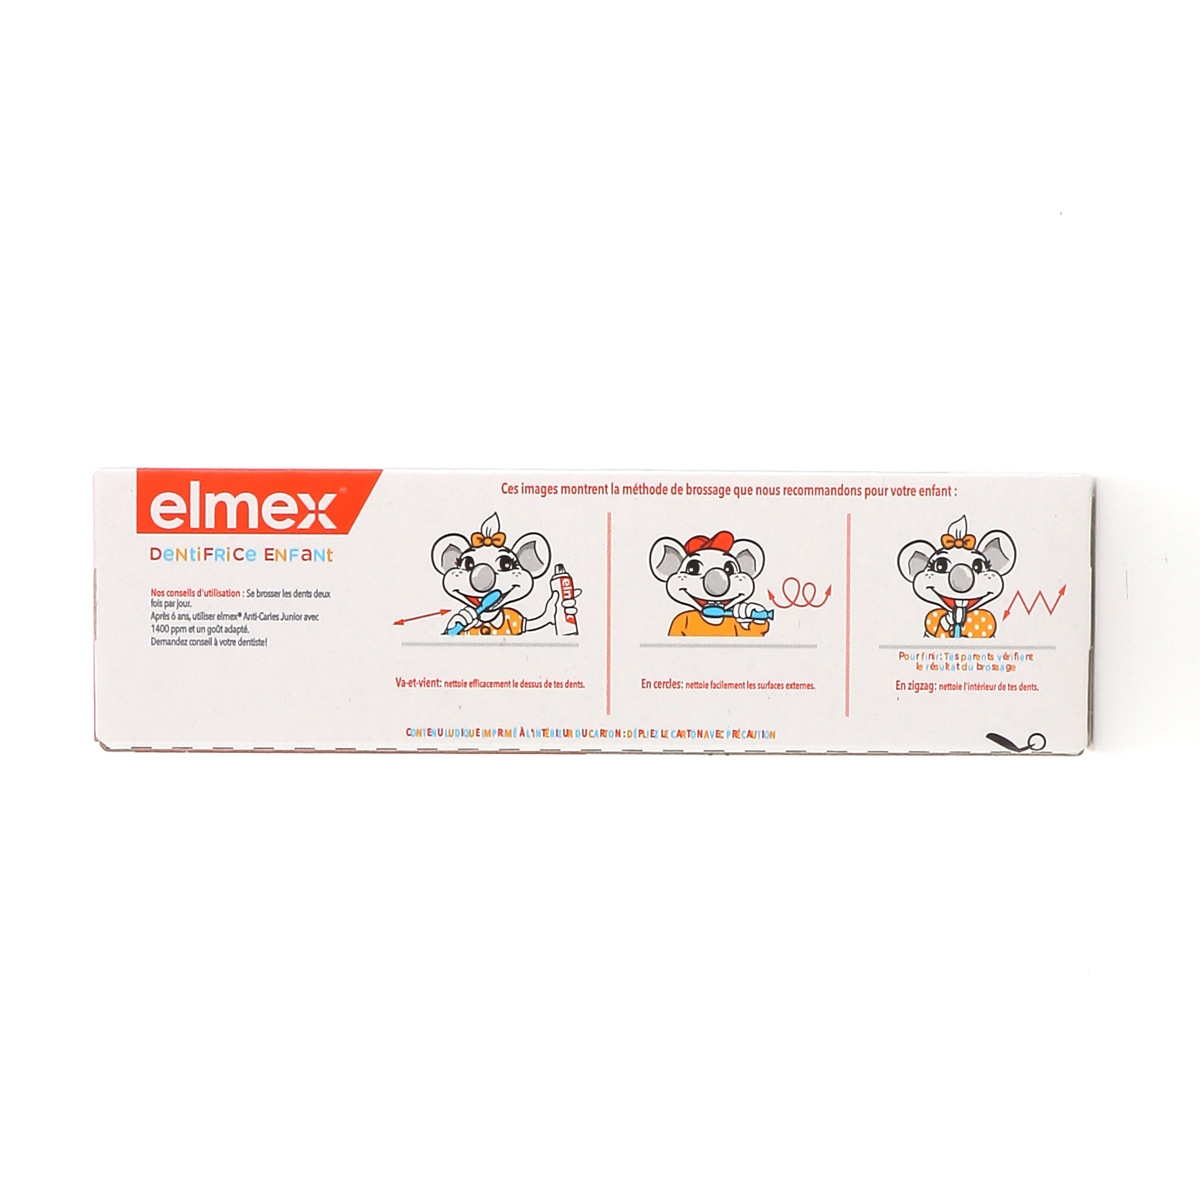 Elmex Dentifrice Enfant 3 à 6 ans 50 ml